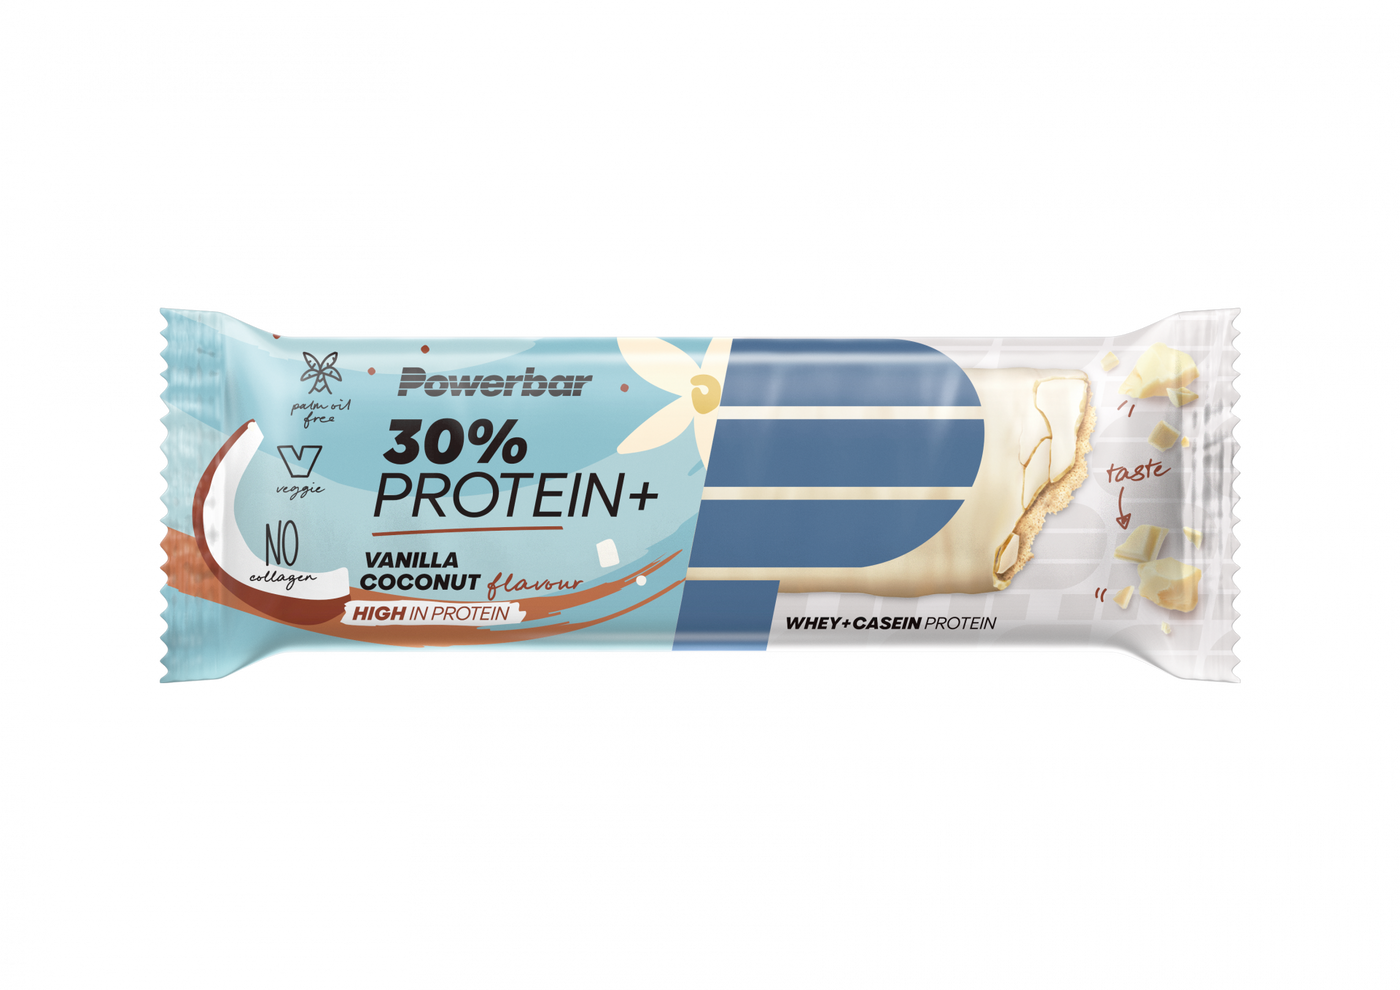 Protein bar 30% Protein+